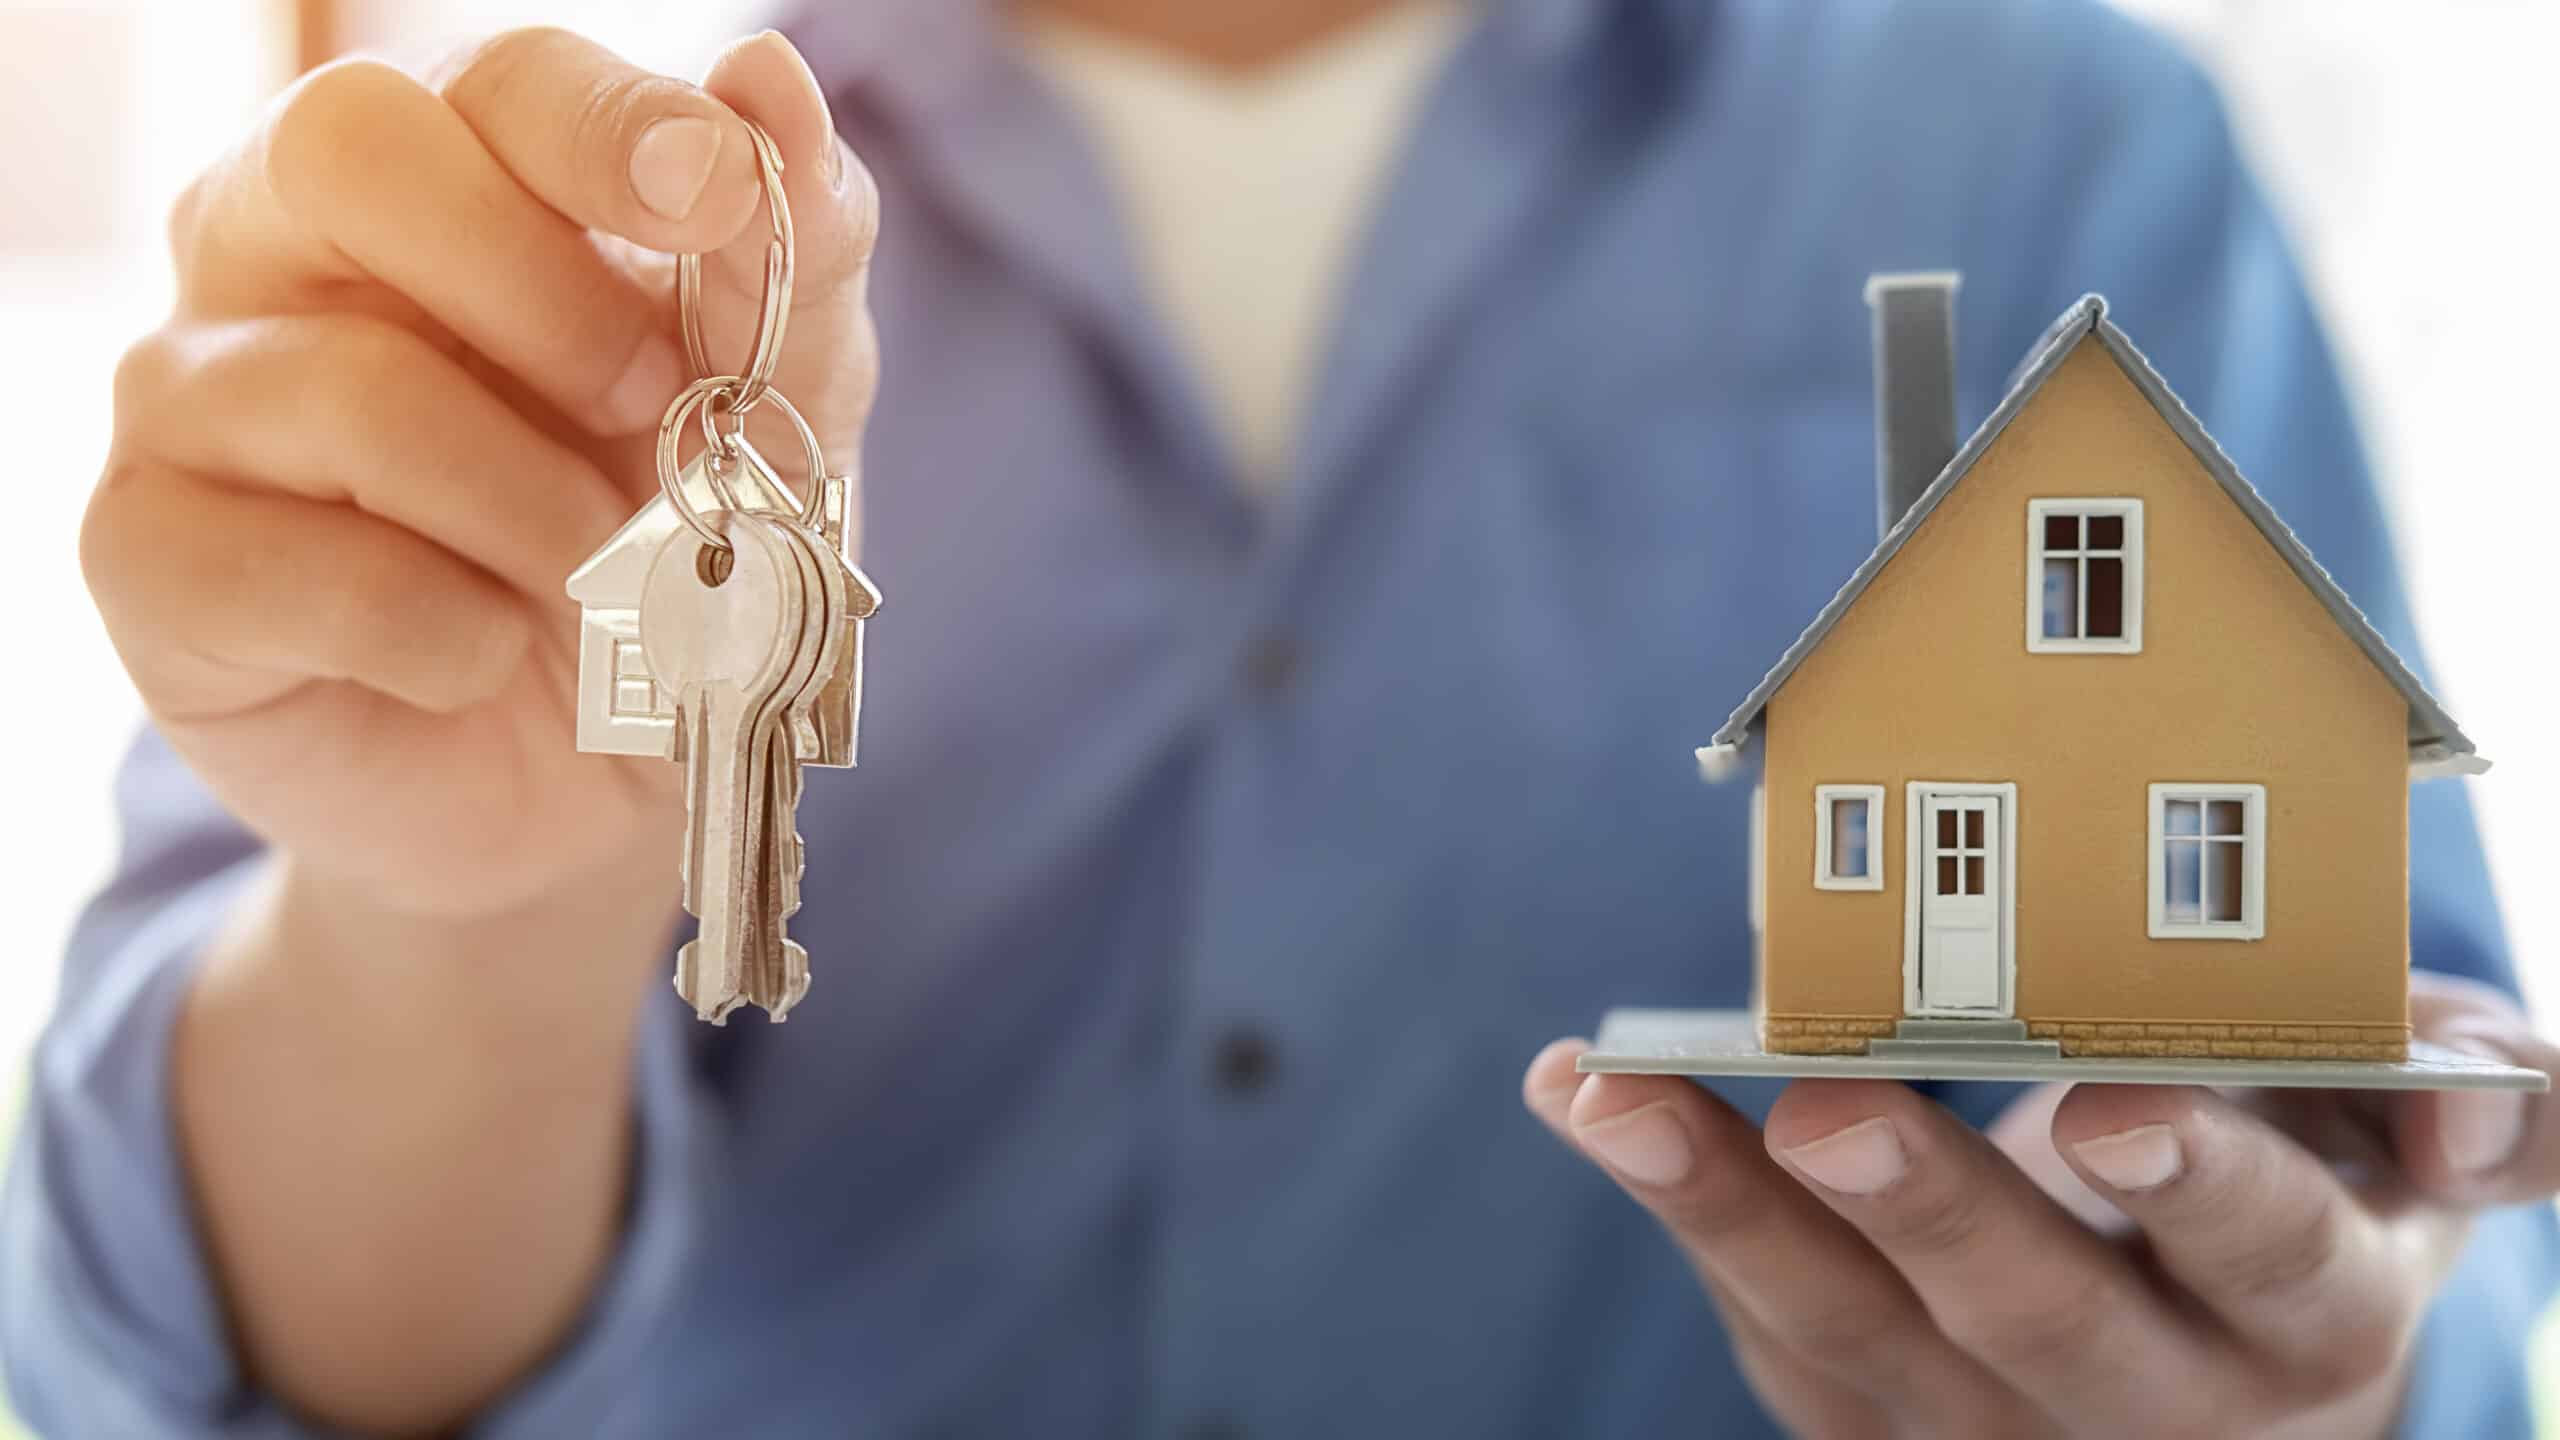 Ein Immobilienmakler übergibt einen Schlüsselbund und hält ein Modellhaus in der Hand, symbolisiert den erfolgreichen Immobilienverkauf und die professionelle Betreuung durch Immobilienmakler in Bad Nauheim.